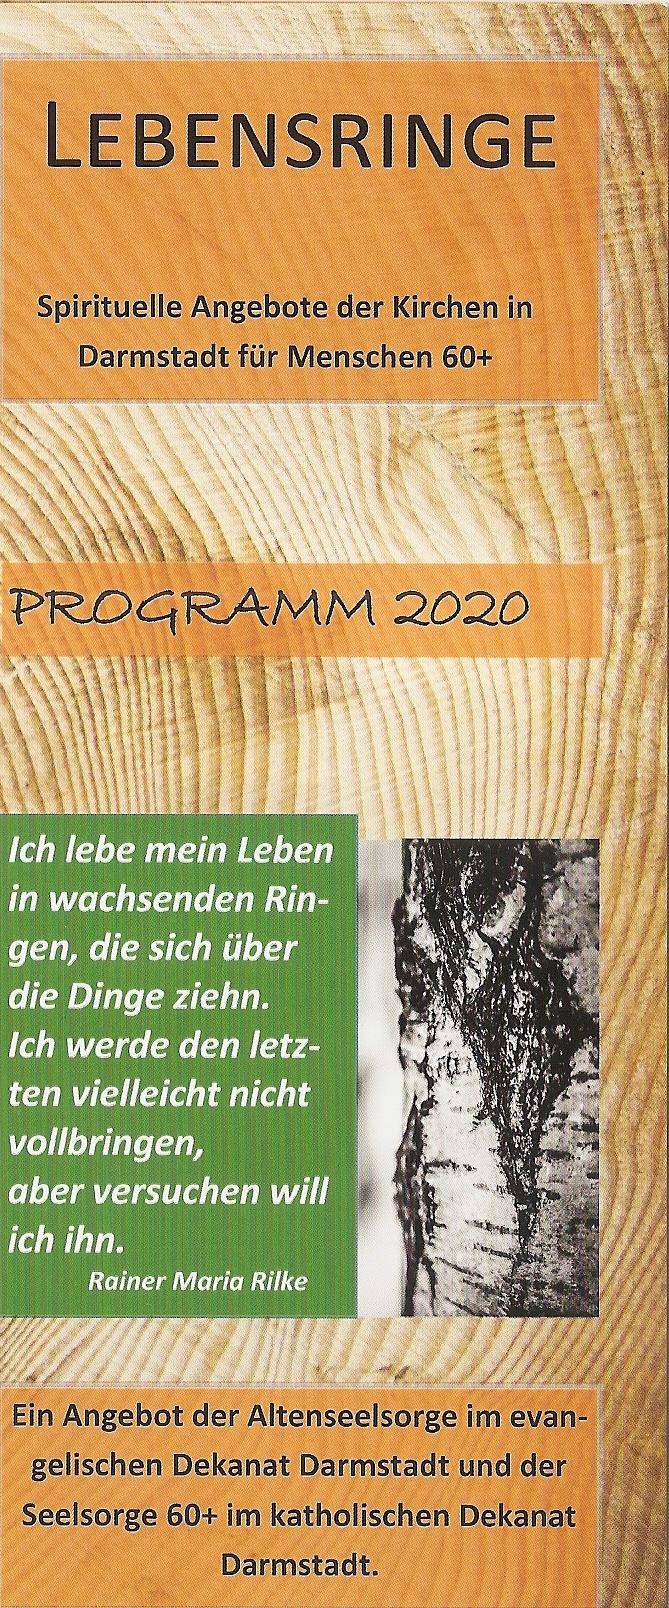 Jahresprogramm 2020 der Seelsorge 60plus im Dekanat Darmstadt